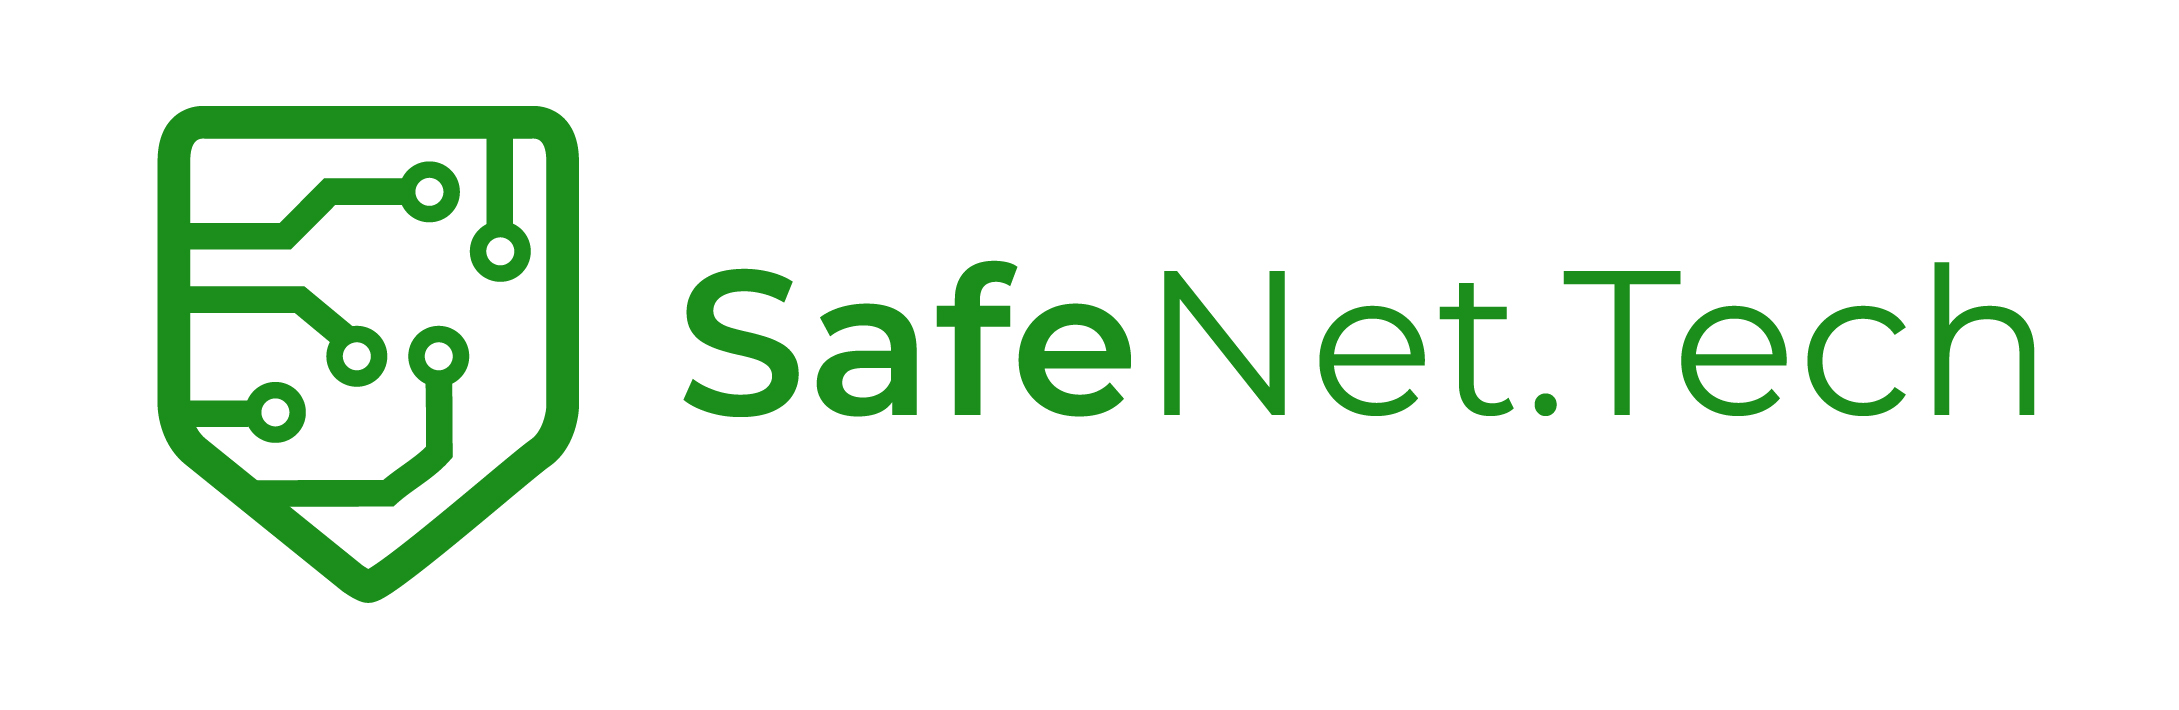 Safenet Blog